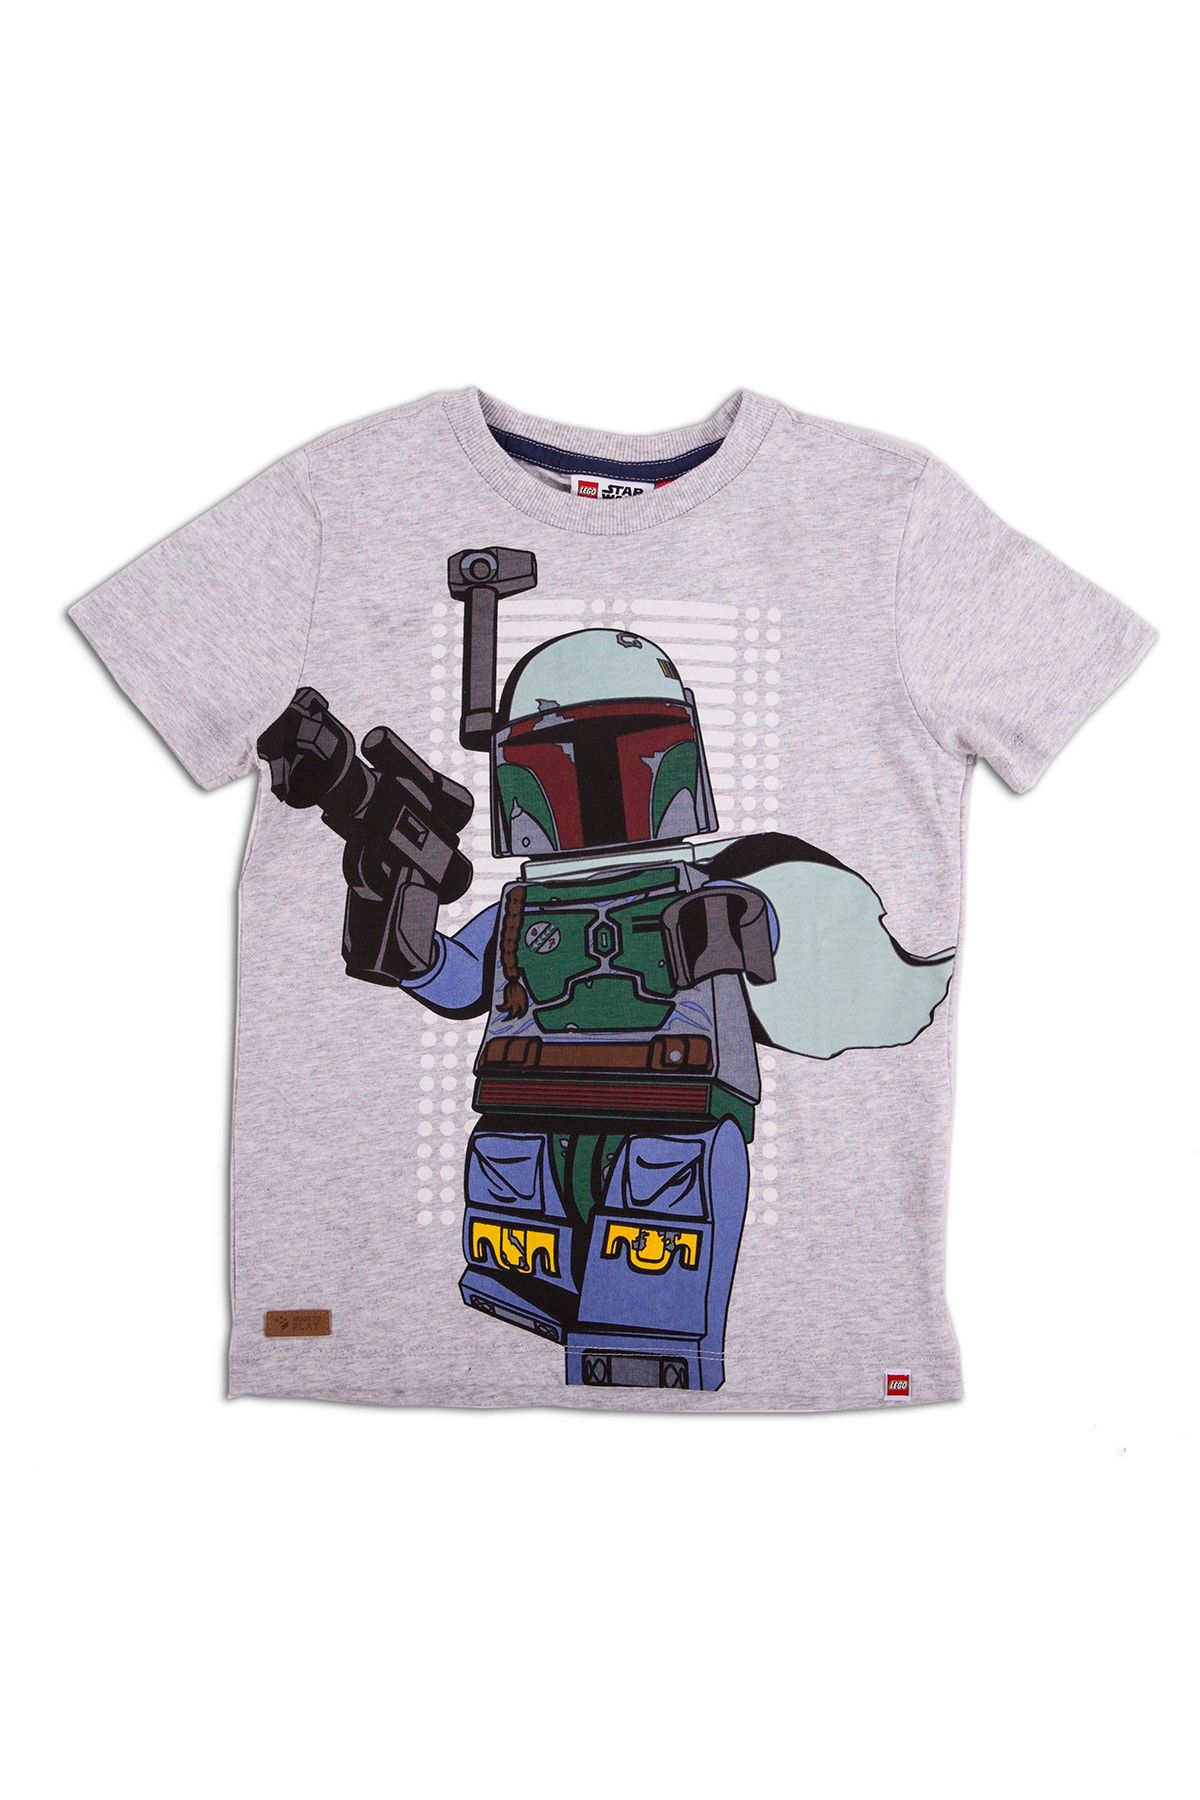 Lego Wear Erkek Çocuk Fosfor Baskılı T-shirt